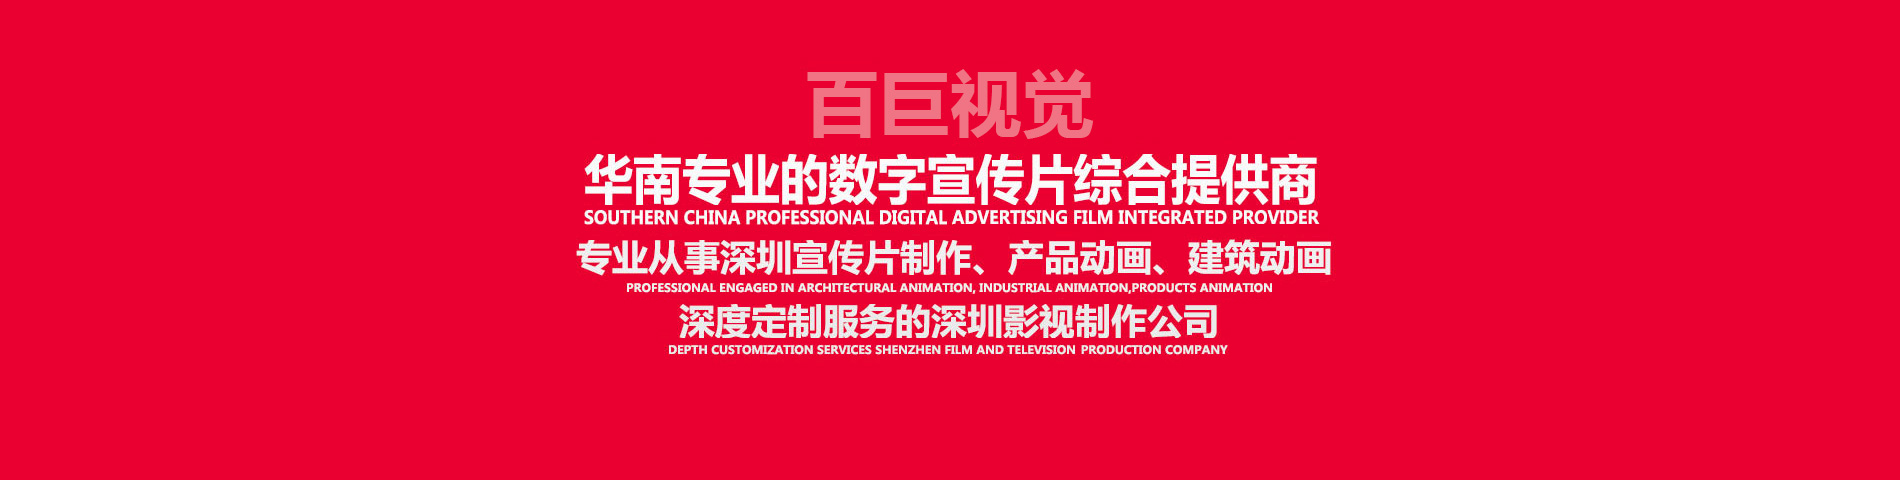 深圳宣傳片制作、深圳視頻制作、深圳影視制作、深圳視頻拍攝，深度定制服務的深圳影視制作公司